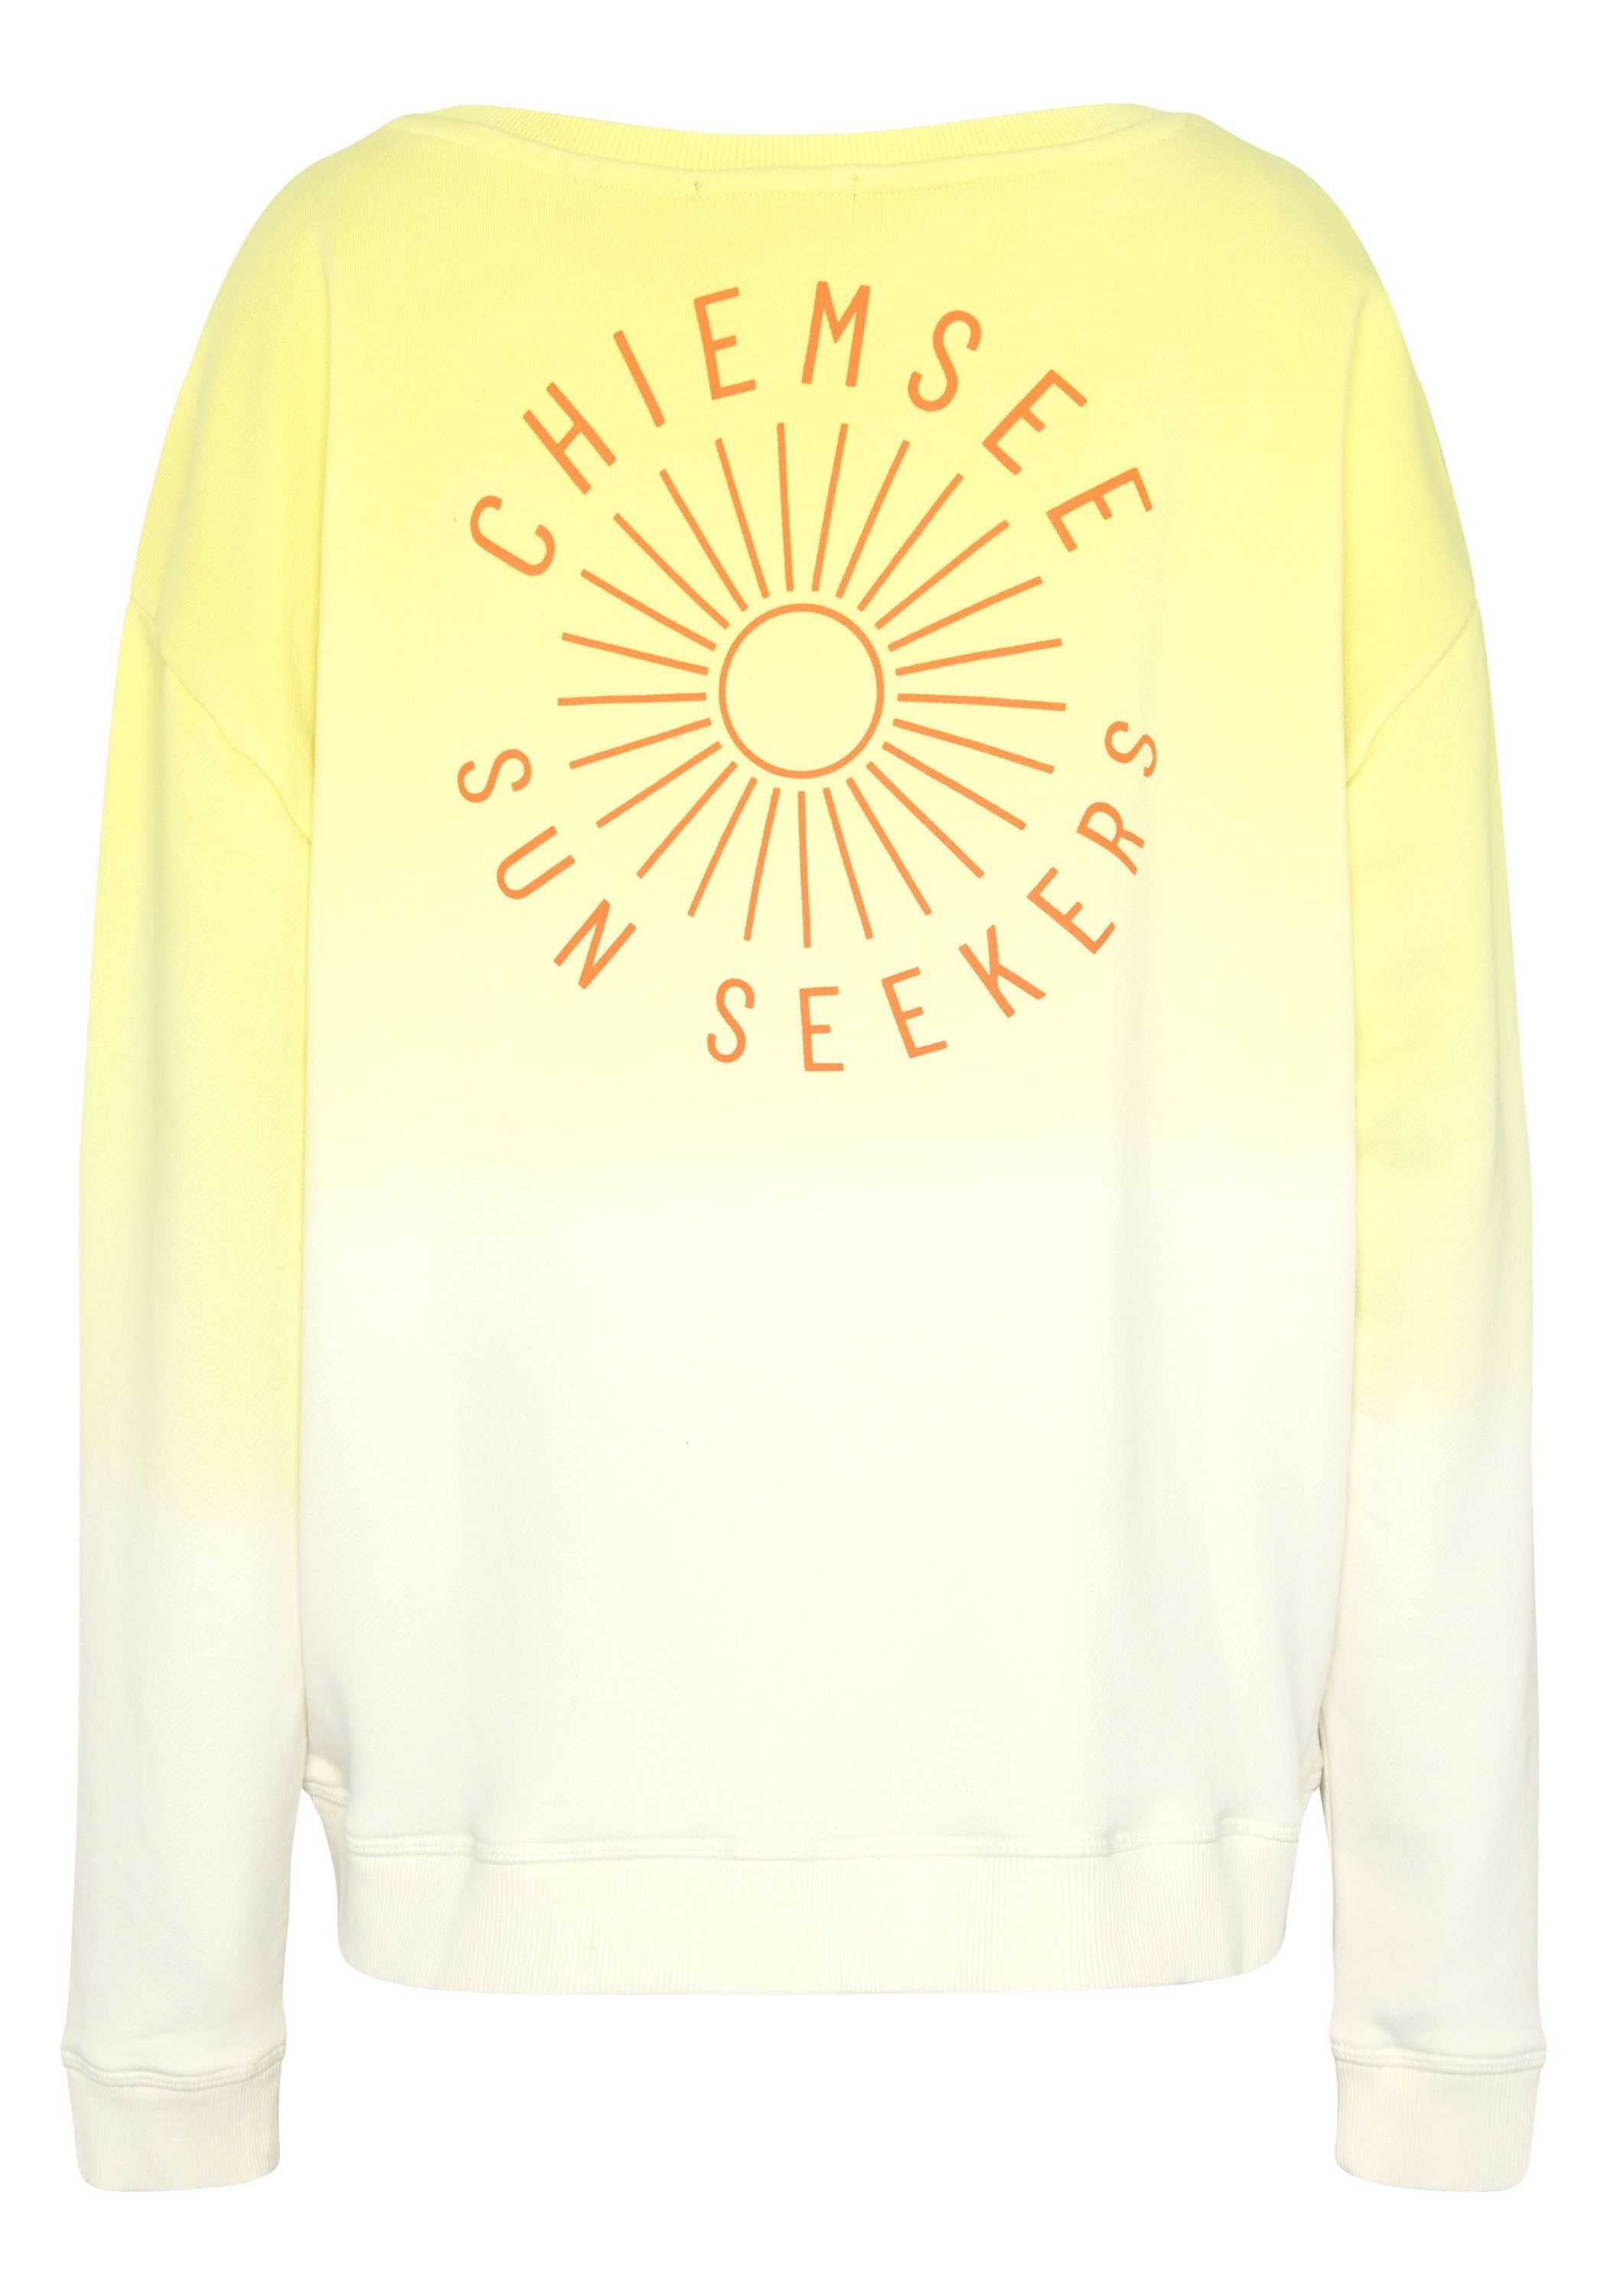 mit Sweatshirt Print 2010 Sweater 1 Farbverlauf und Yellow/White Chiemsee